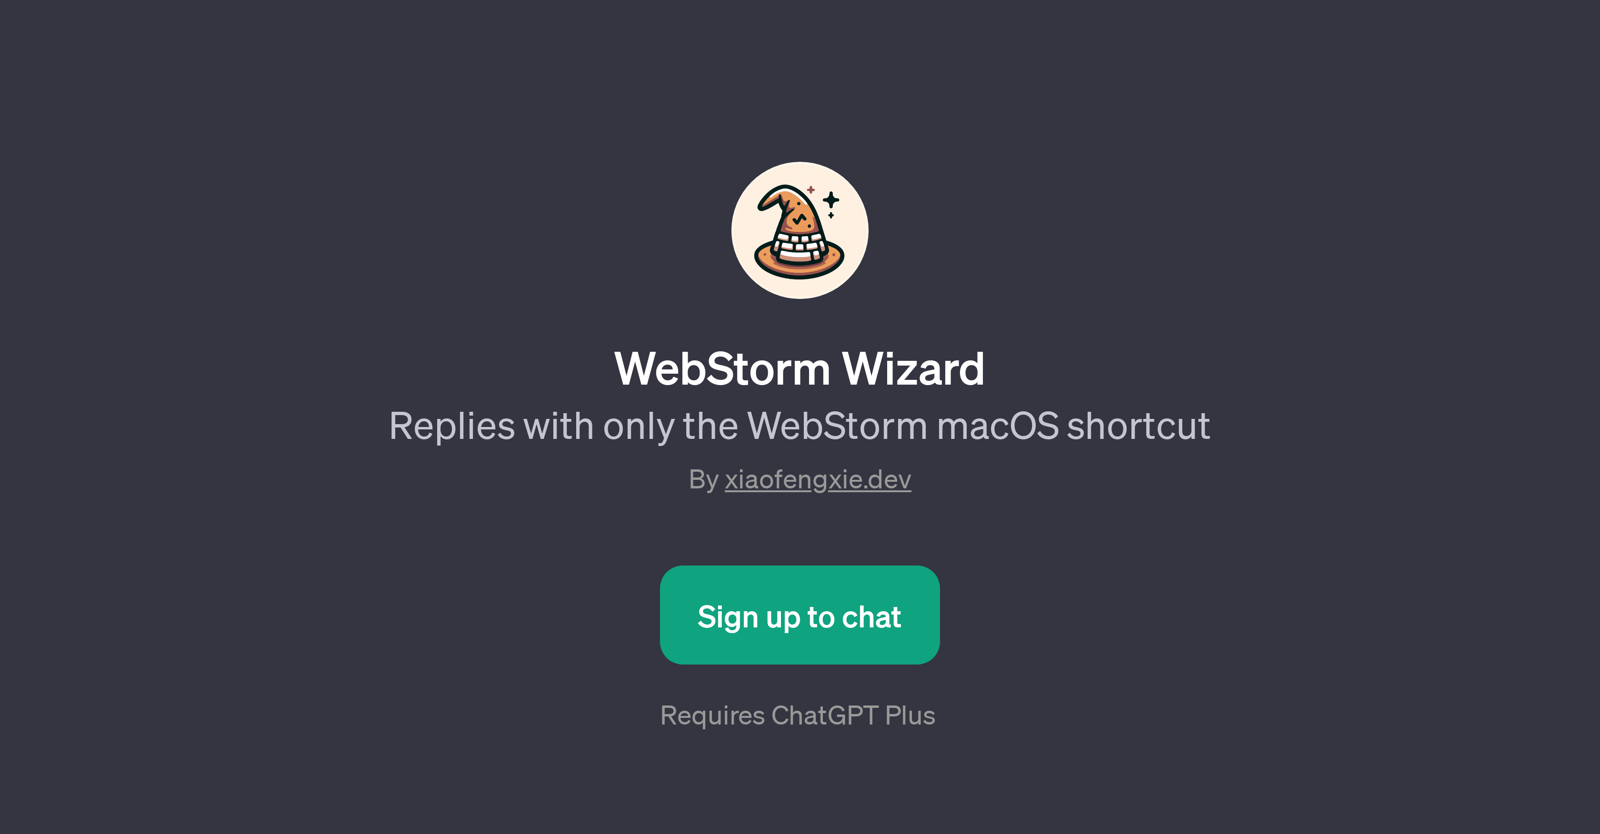 WebStorm Wizard website